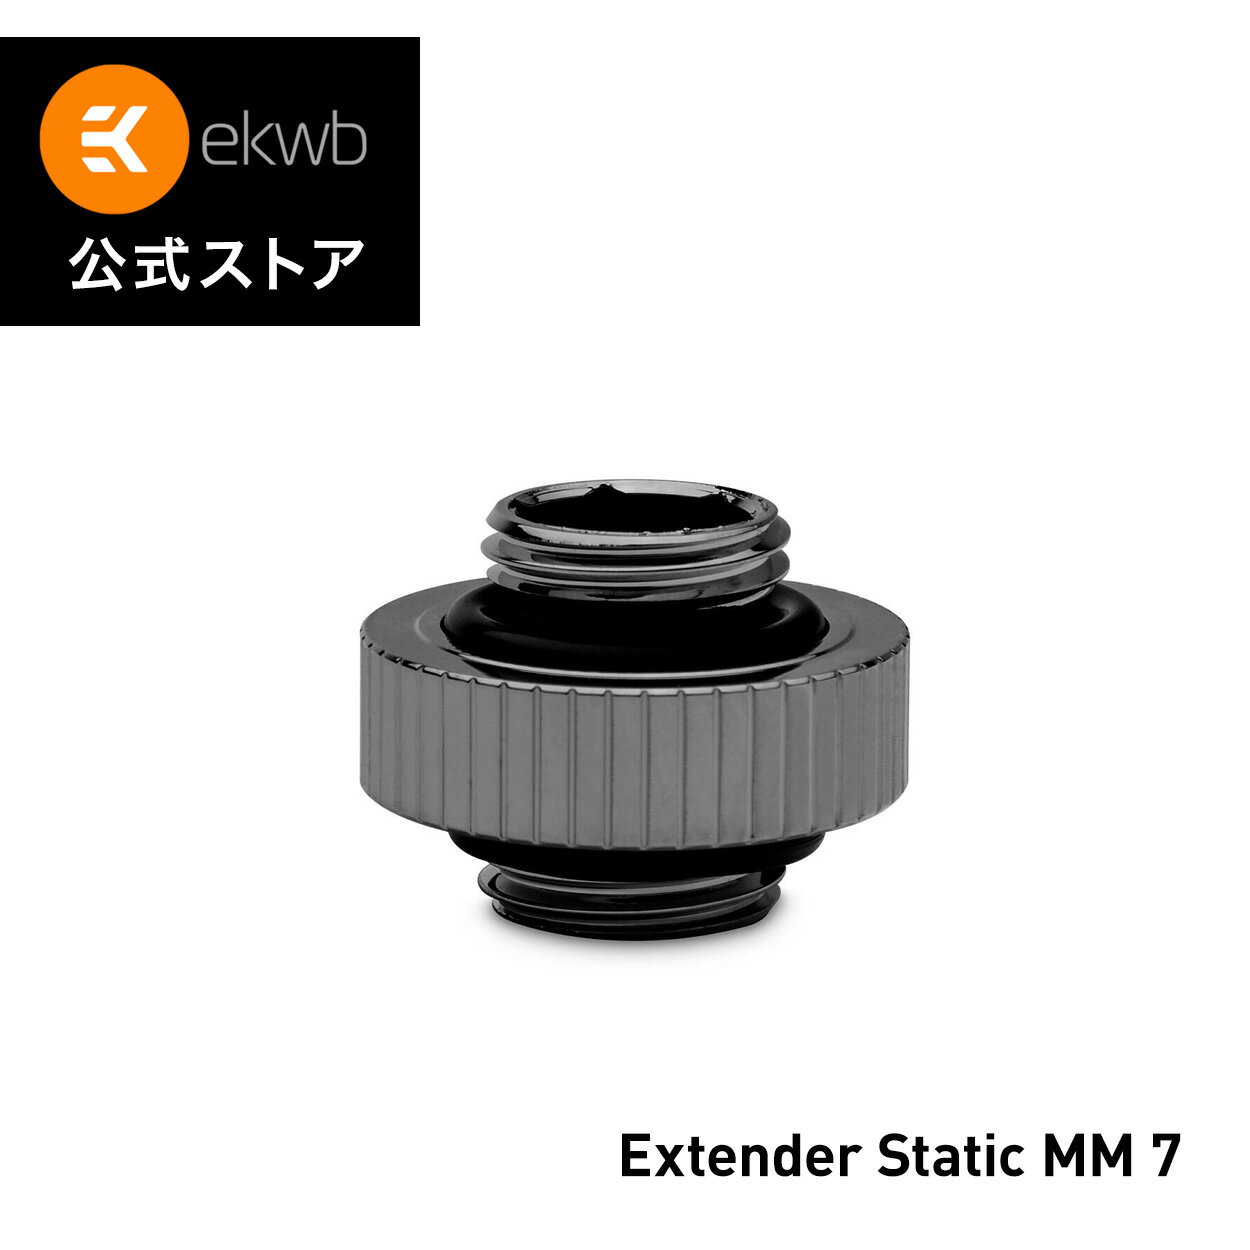 【EKWB公式】EK-Quantum Torque Extender Static MM 7 - Black Nickel